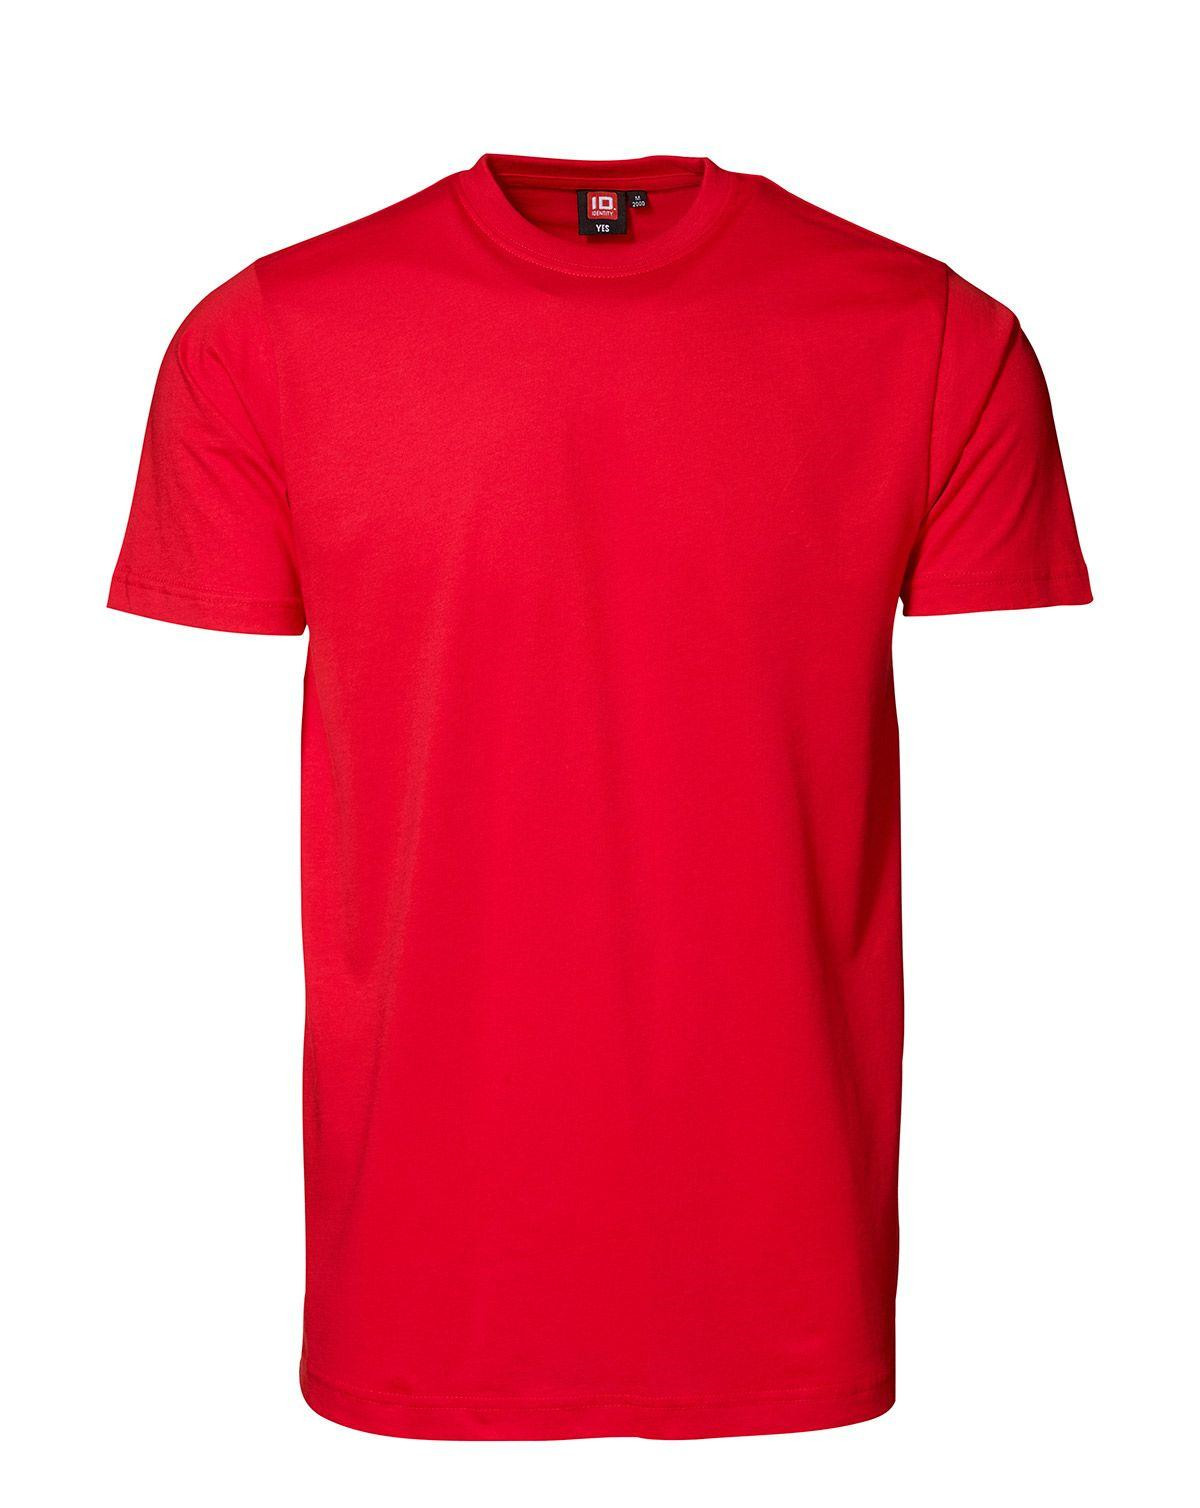 ID YES T-shirt (Rød, S)